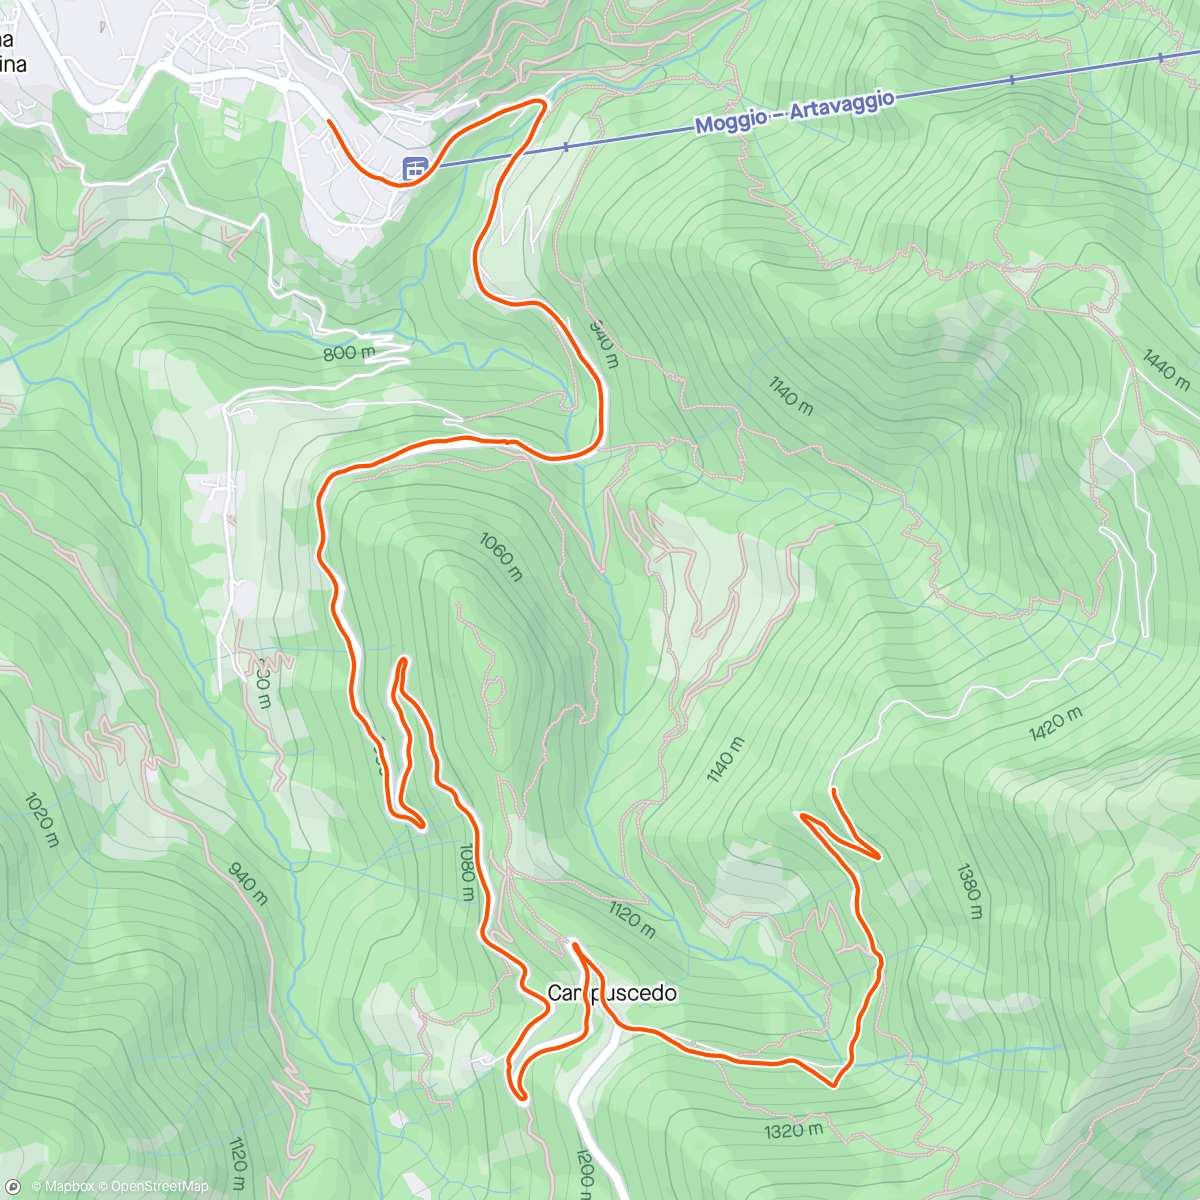 Map of the activity, Quasi Artavaggio